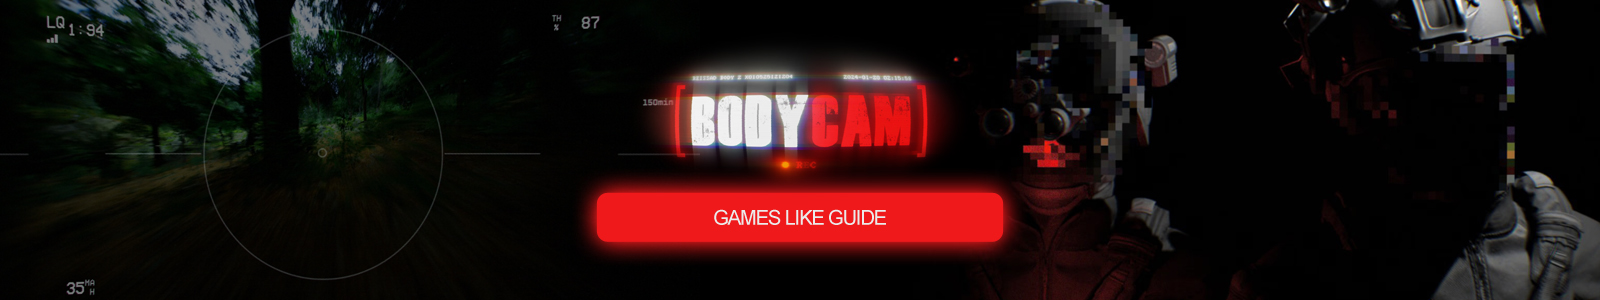 Guida a giochi simili a Bodycam